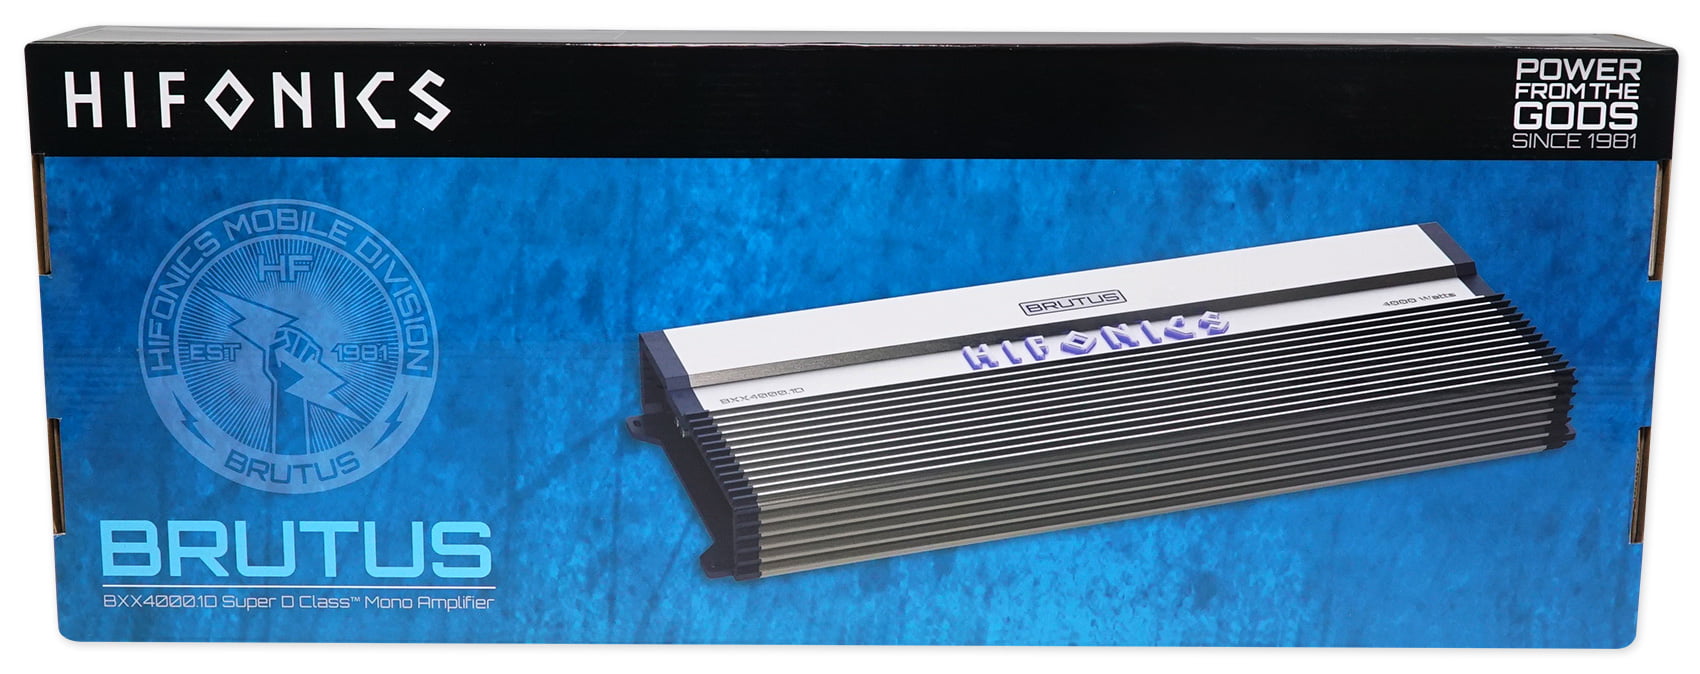 Hifonics BXX4000.1D Brutus 4000W RMS Class D Mono Car Subwoofer Amplifier w/Amp Kit 